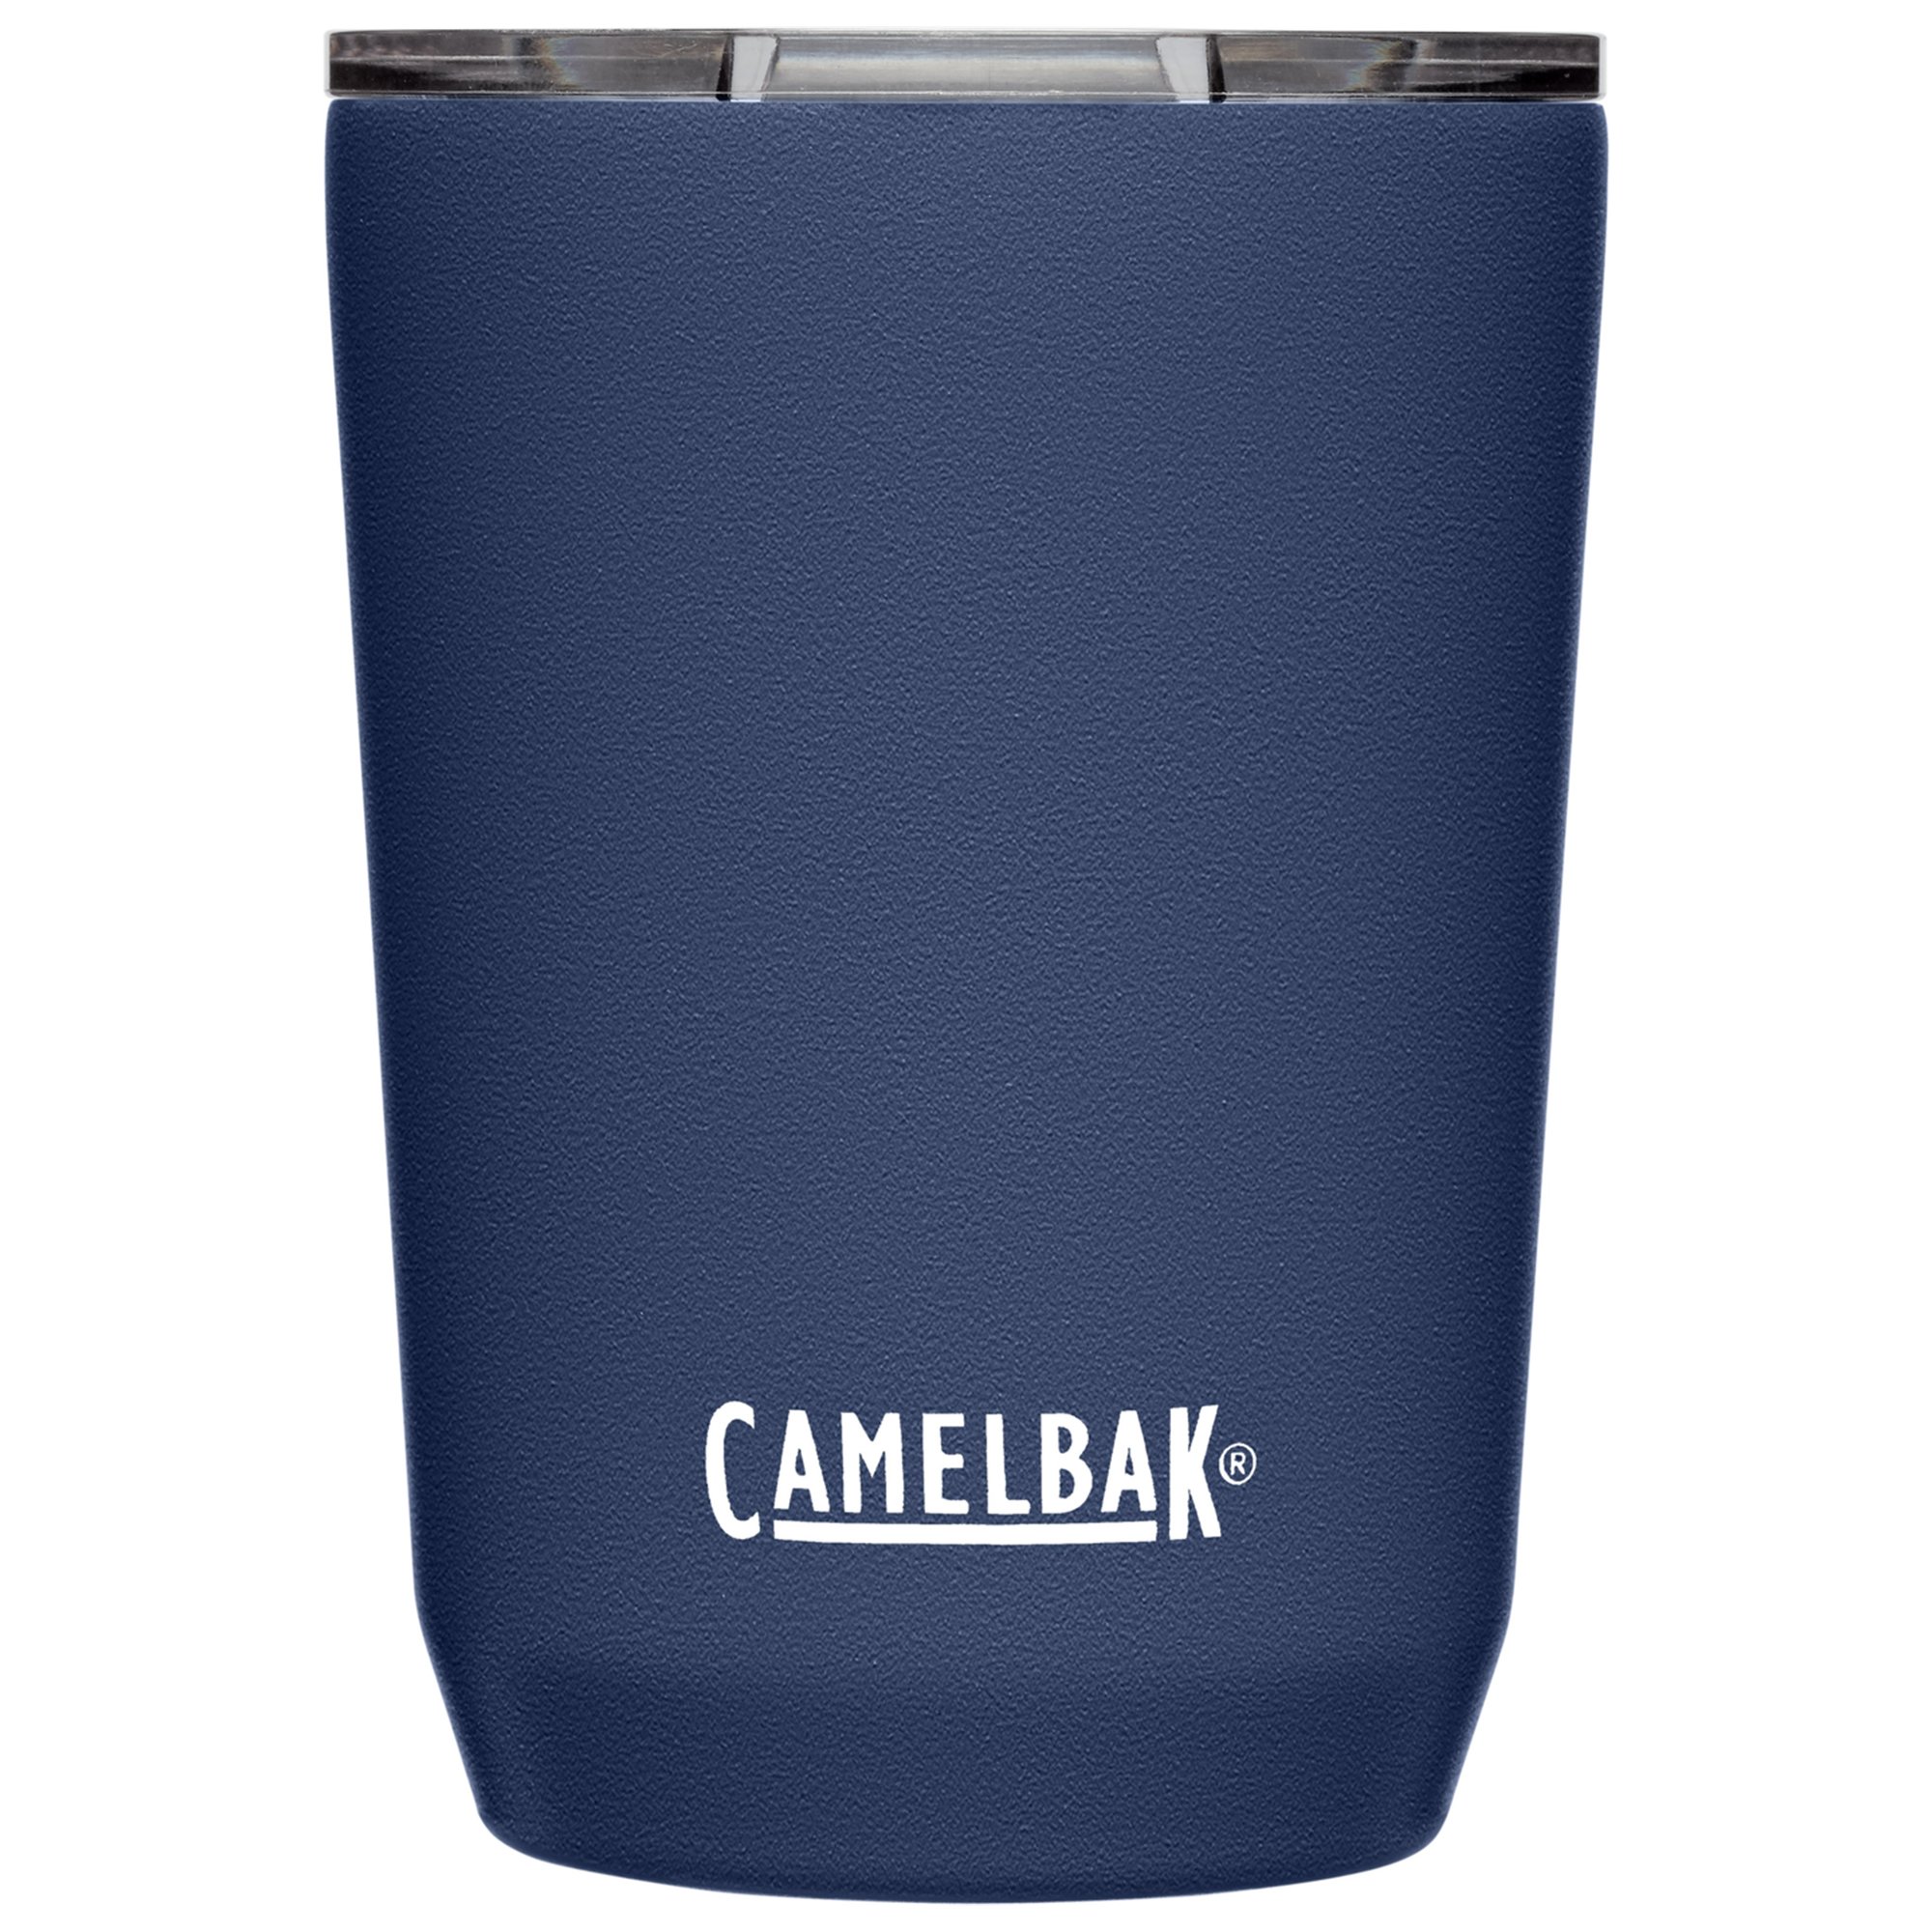 Camelbak Tumbler termokrus 0,35 liter, navy